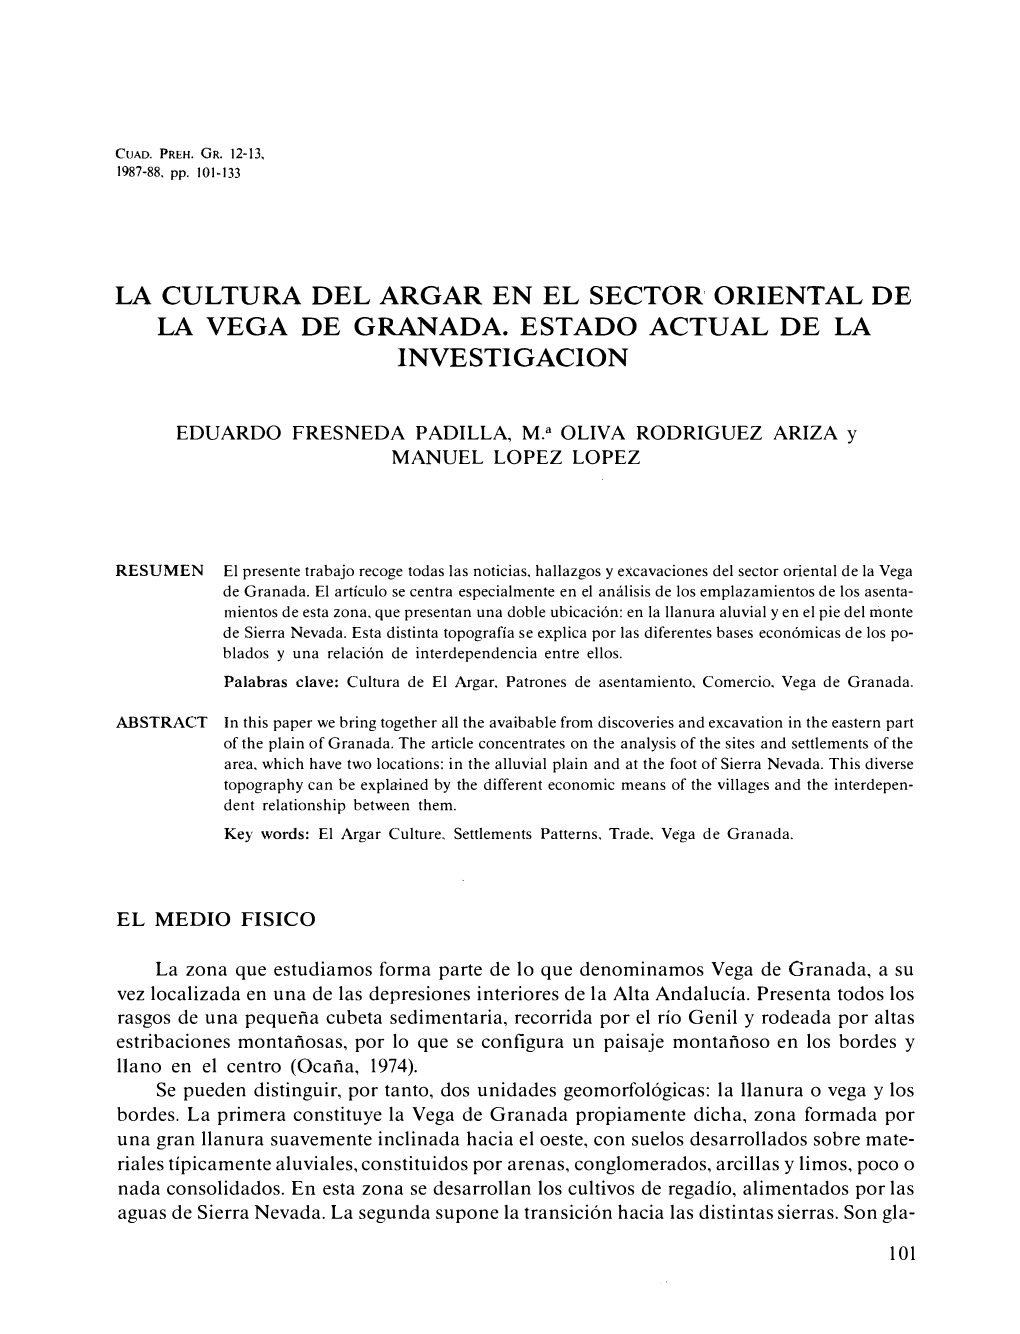 La Cultura Del Argar En El Sector' Oriental De La Vega De Granada. Estado Actual De La Investigacion